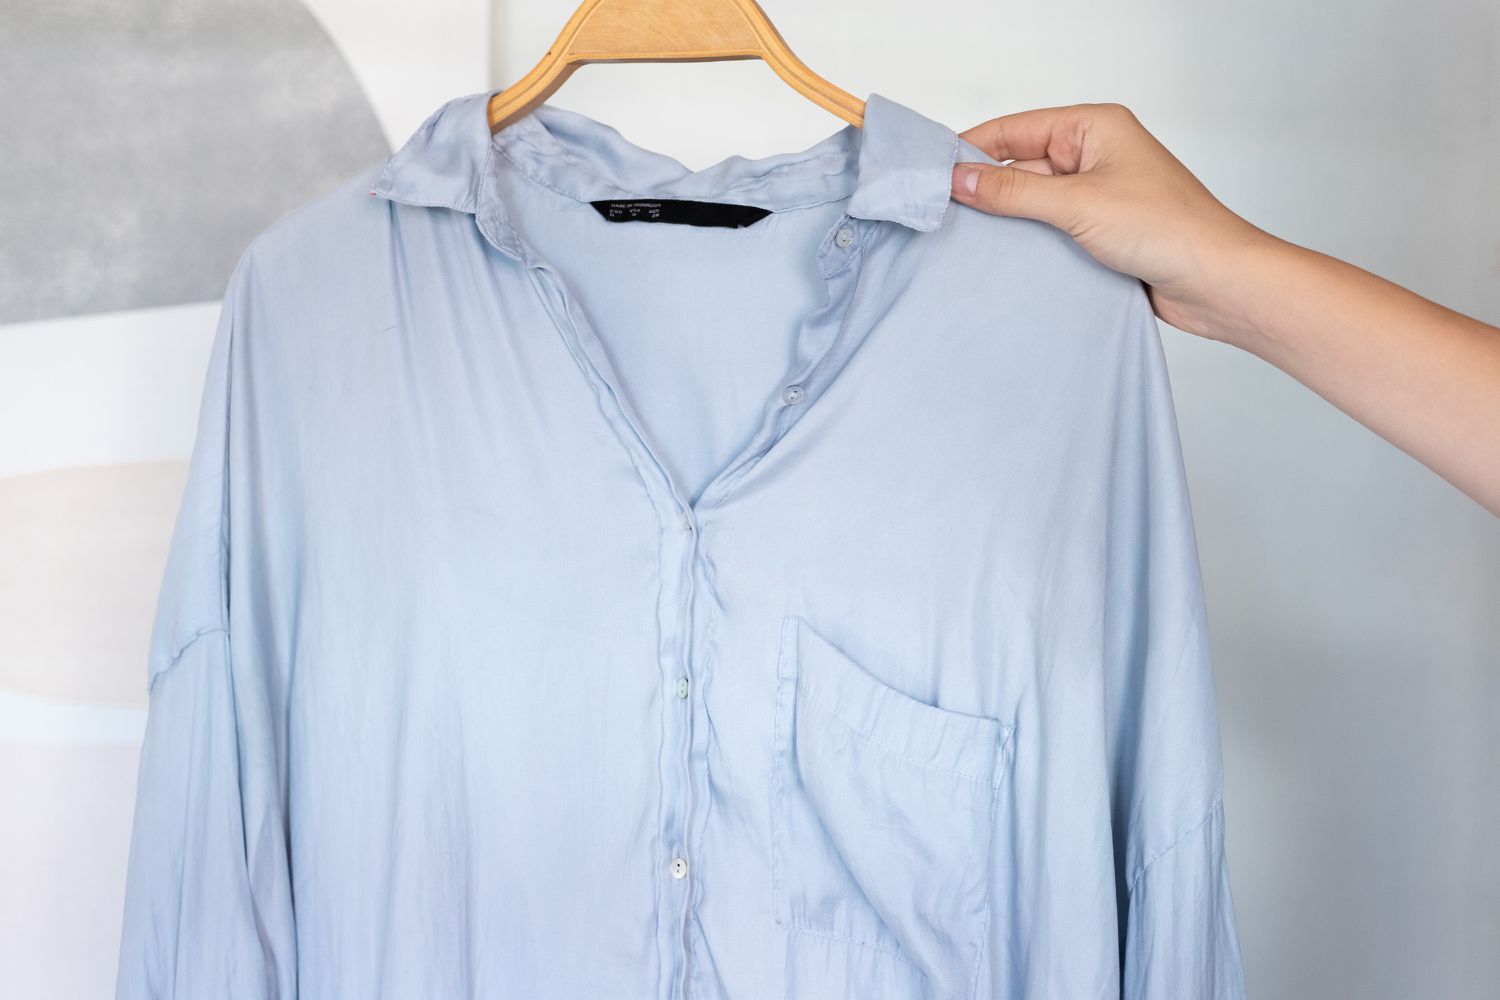 Blaues Polyesterhemd gebügelt und zum Lufttrocknen aufgehängt